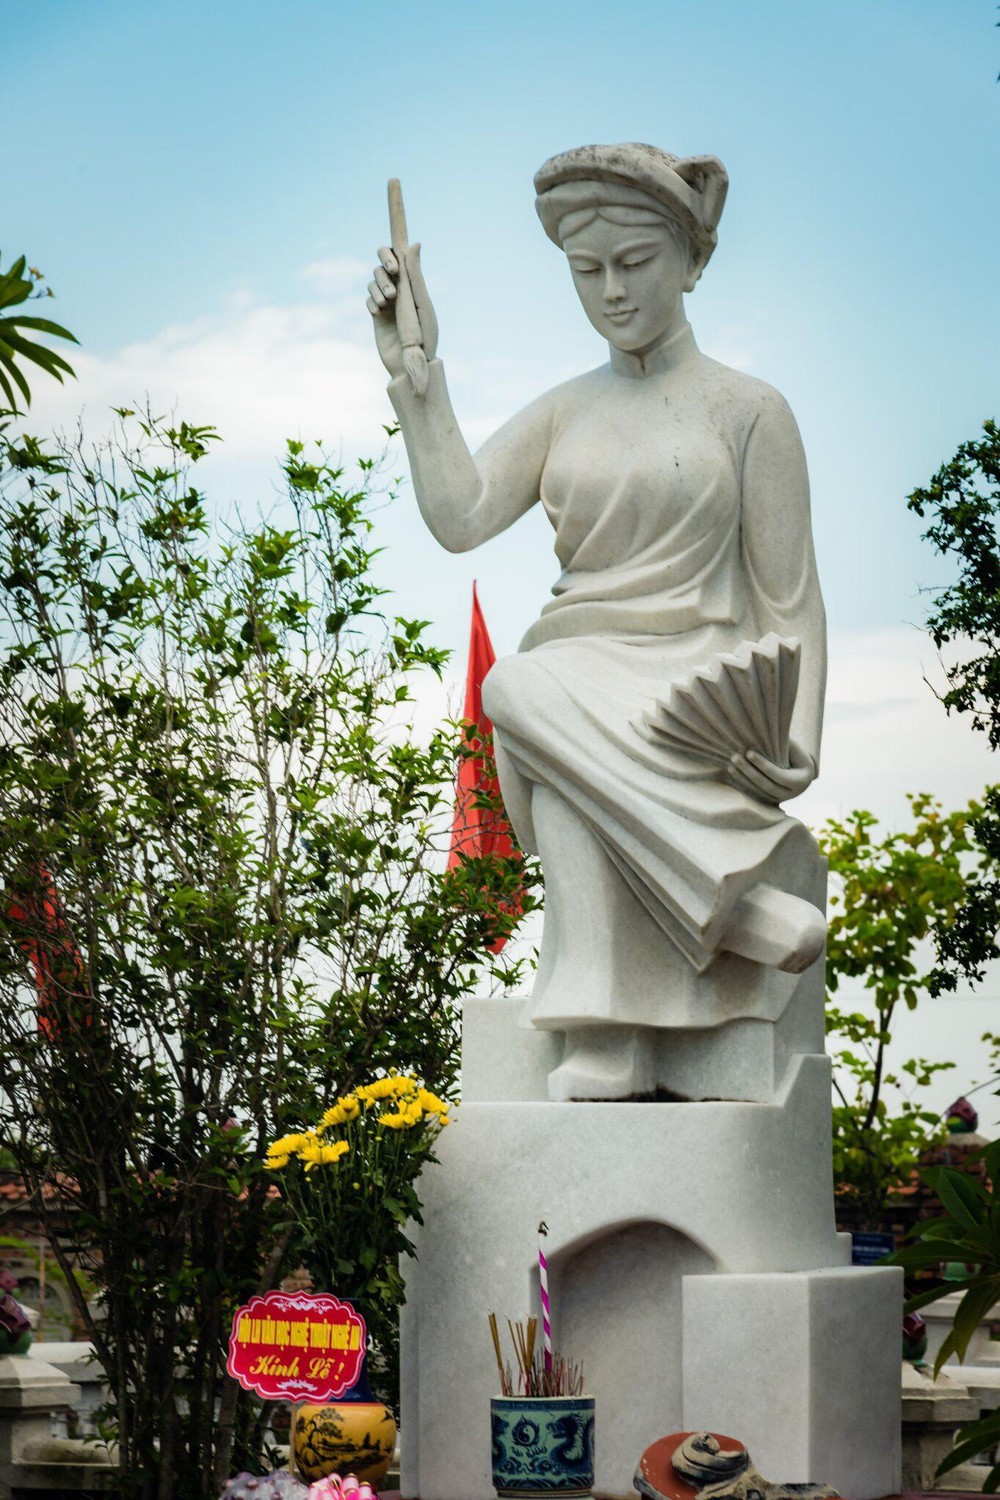 Tuong nu si Ho Xuan Huong tai lang Quynh - Hồ Xuân Hương là hiện tượng văn hóa đặc biệt, mang tầm vóc một thi hào